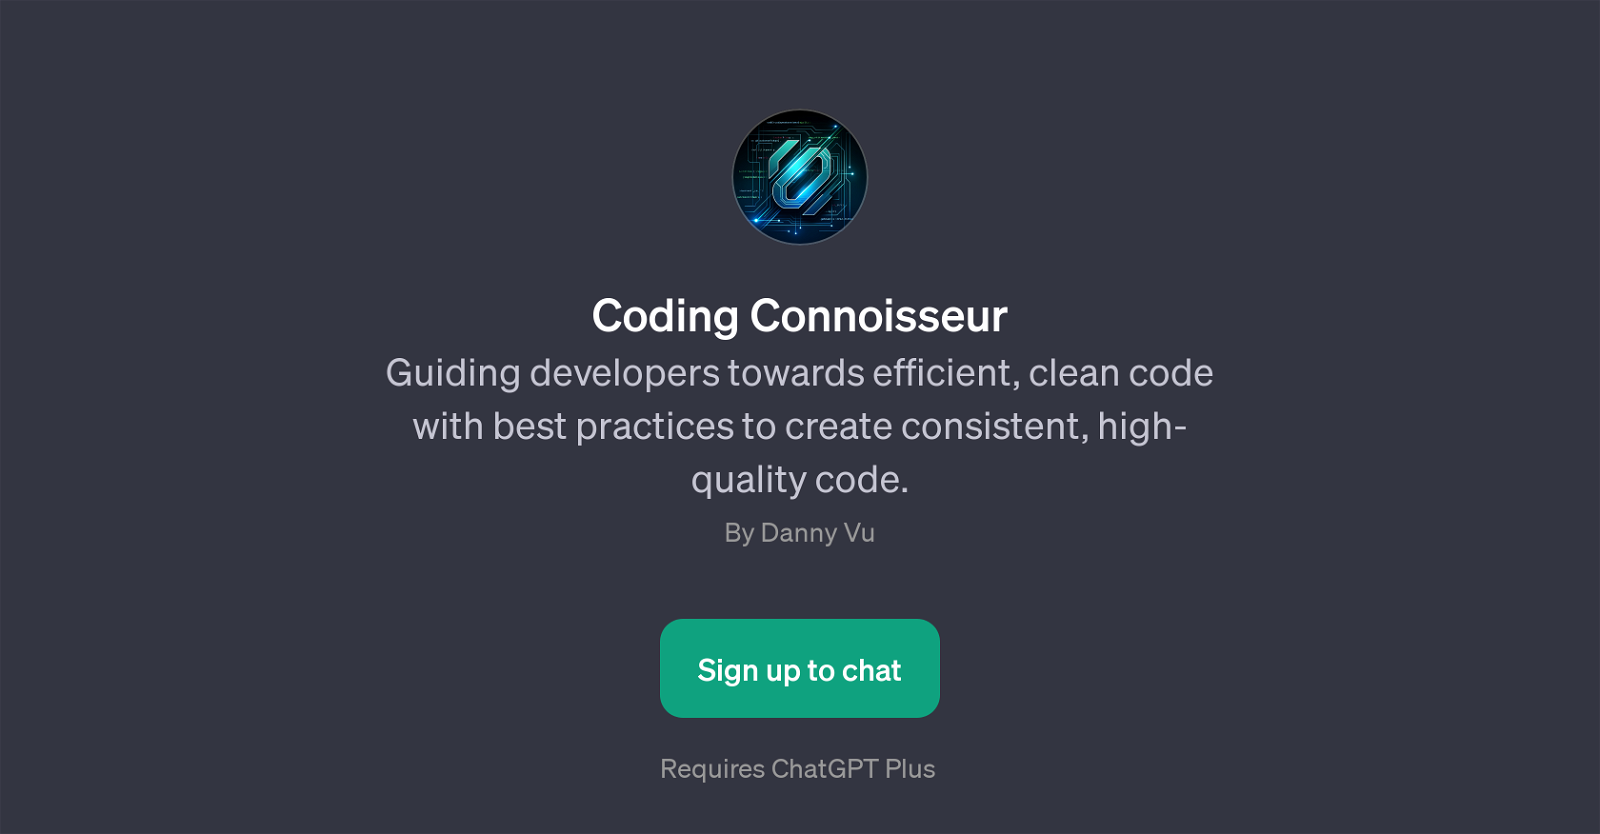 Coding Connoisseur website